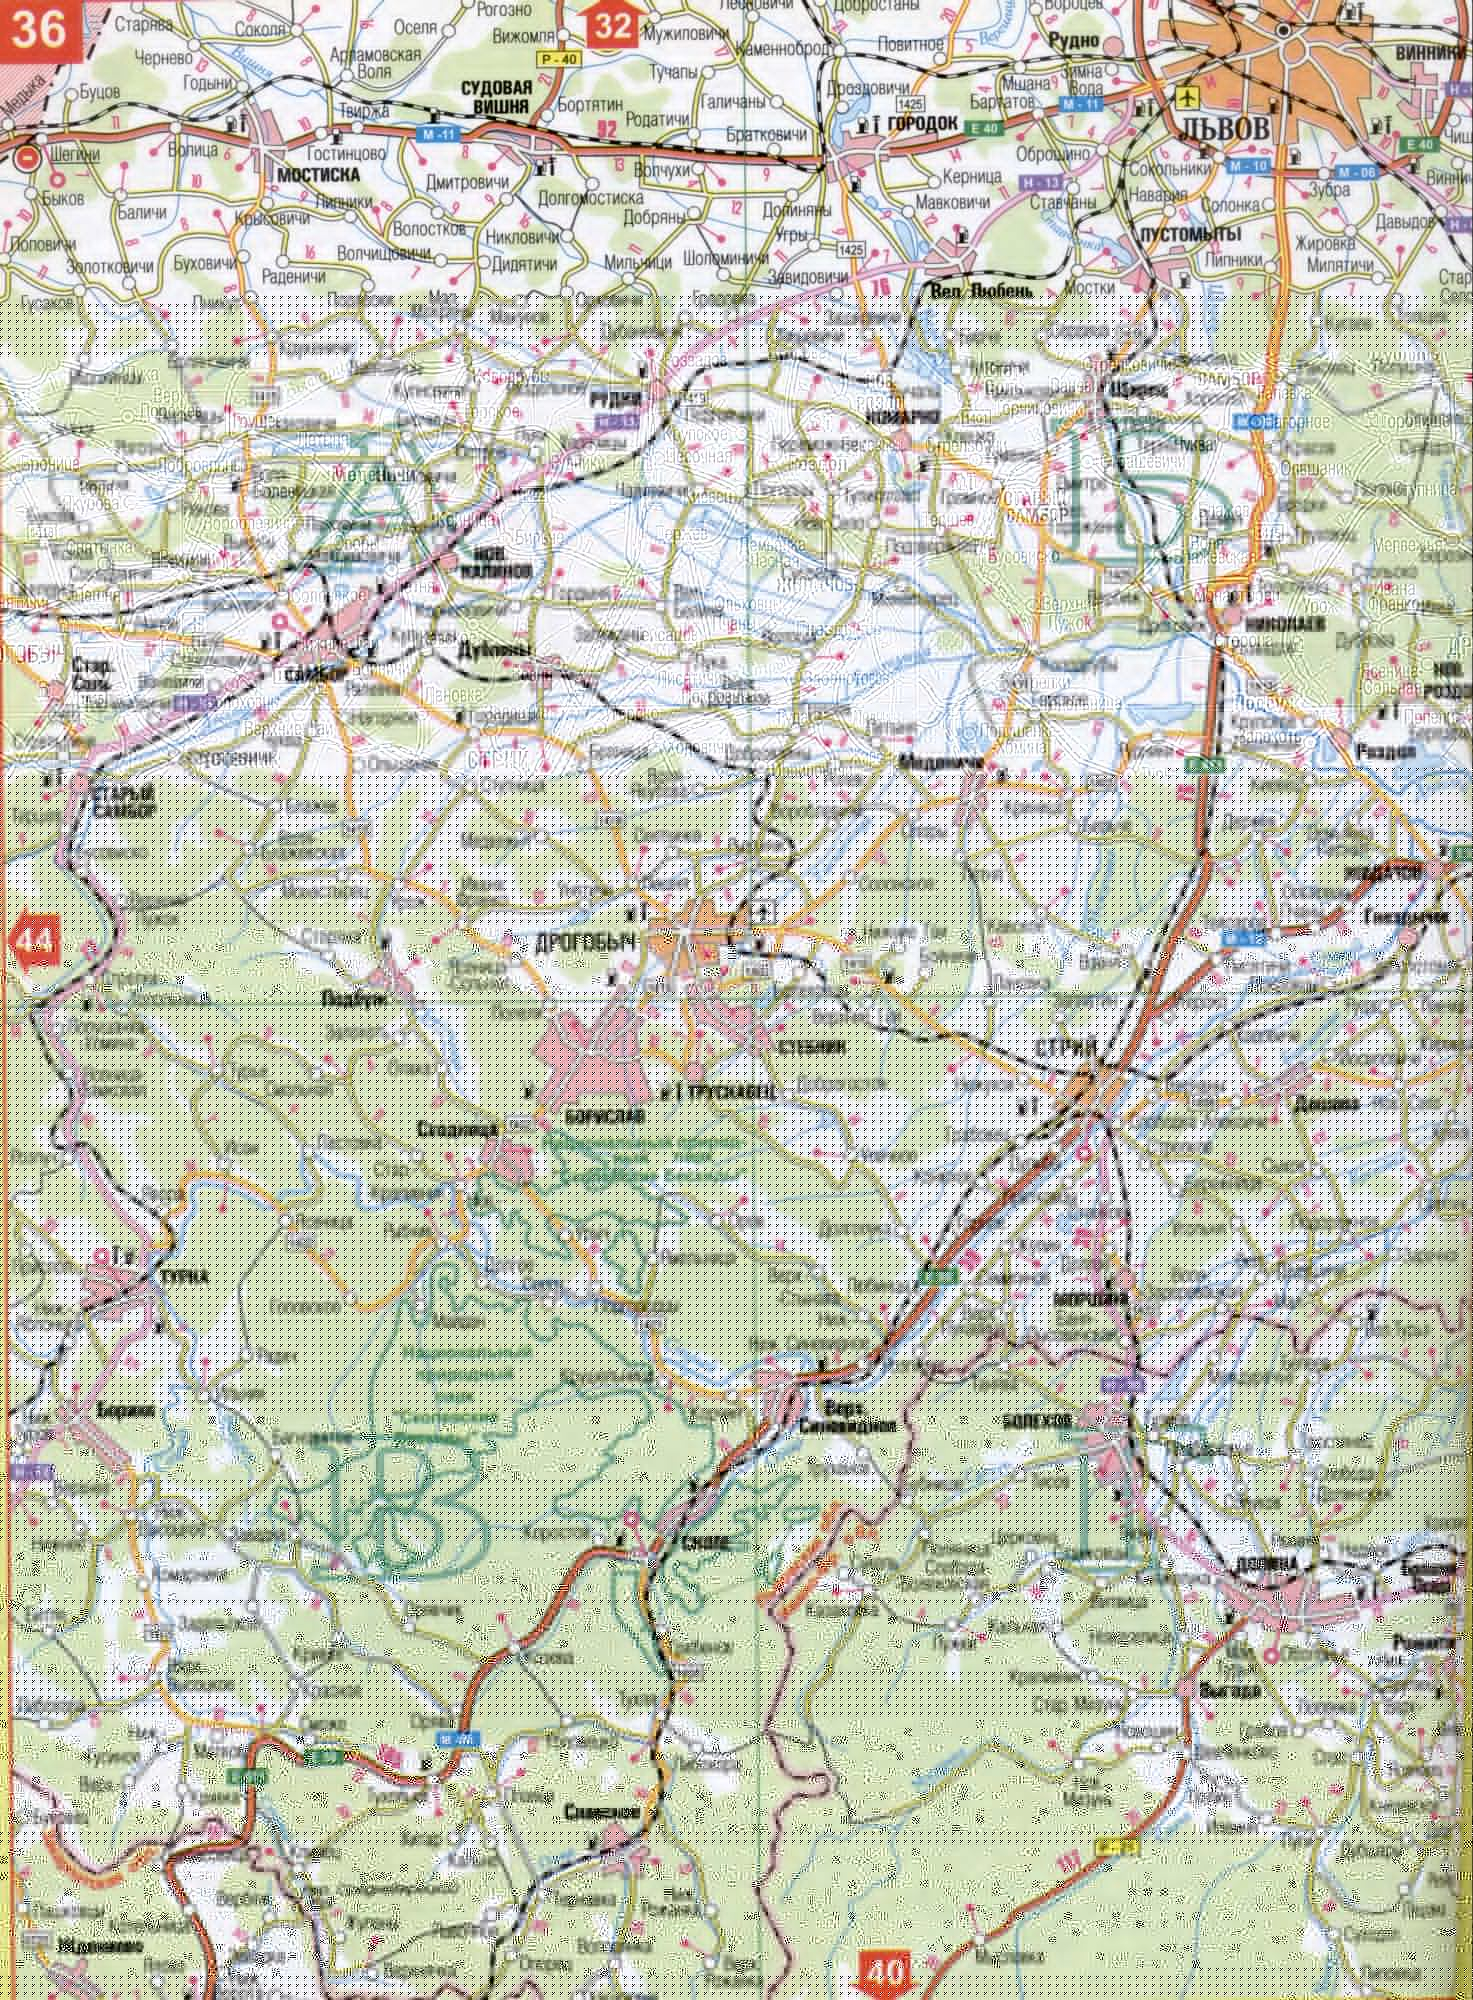 Карта Львовской области Украины (областной центр г.Львов). Скачать бесплатно подробную карту автомобильных дорог, A1 - Сивка,Нежуховка.